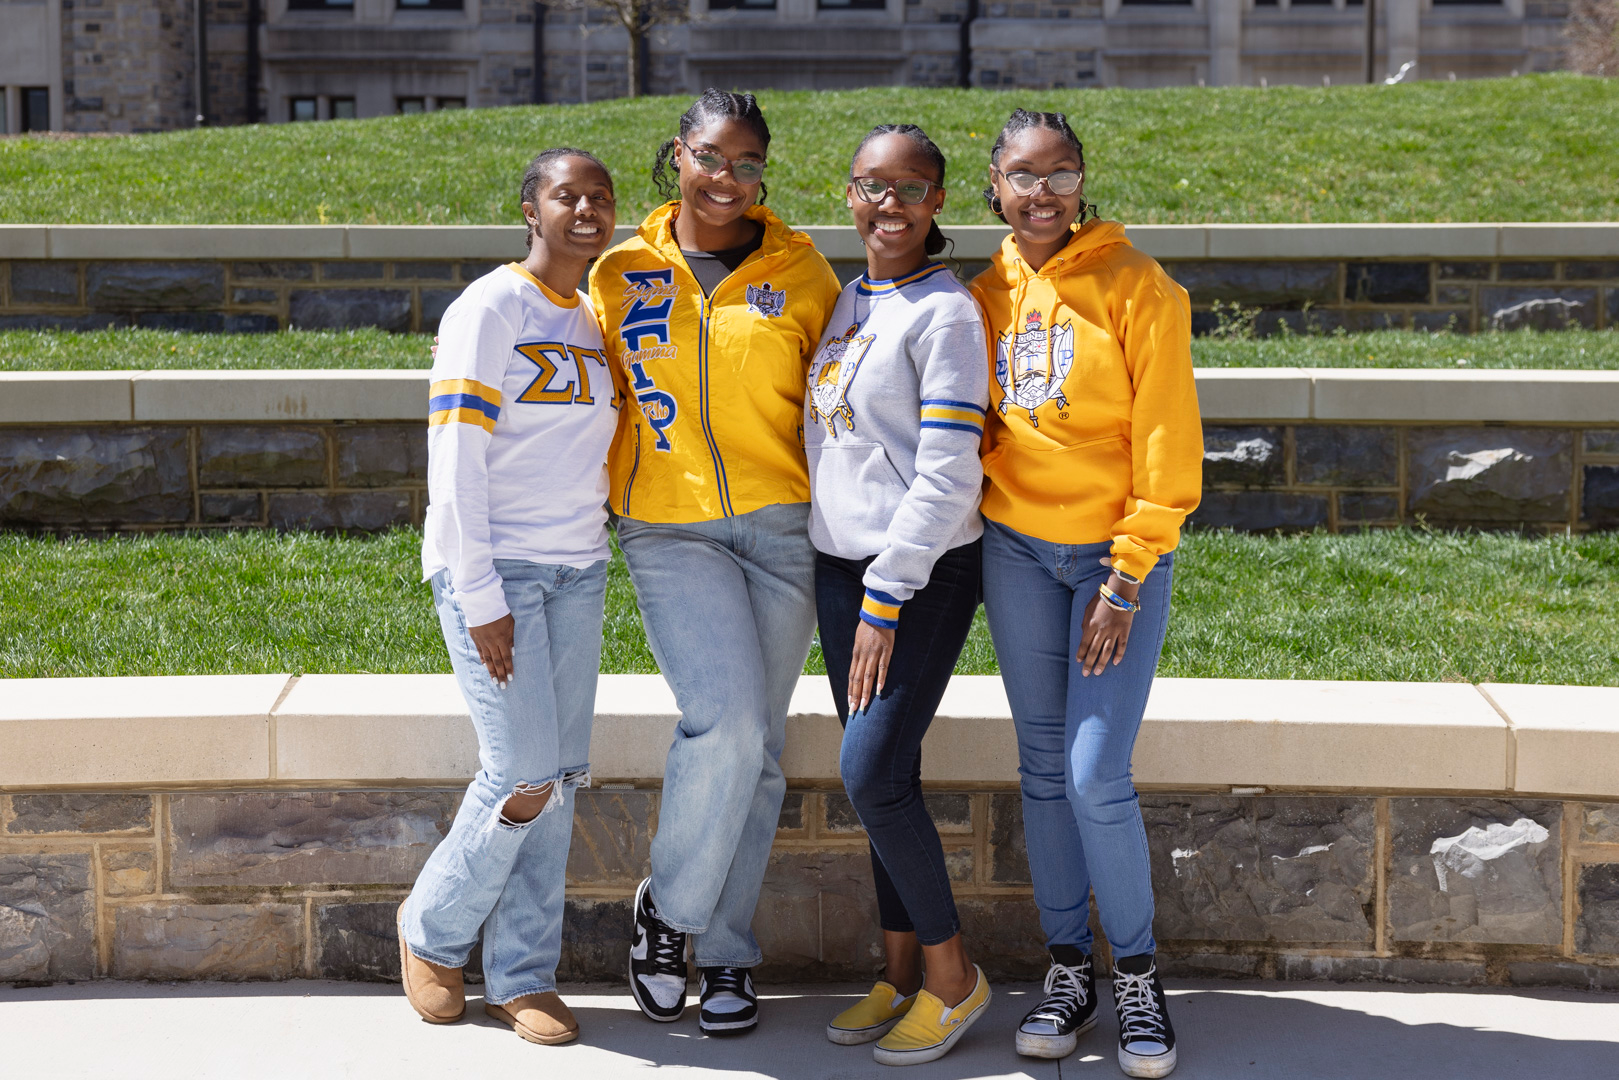 Members of Sigma Phi Epsilon in Spring 2019.